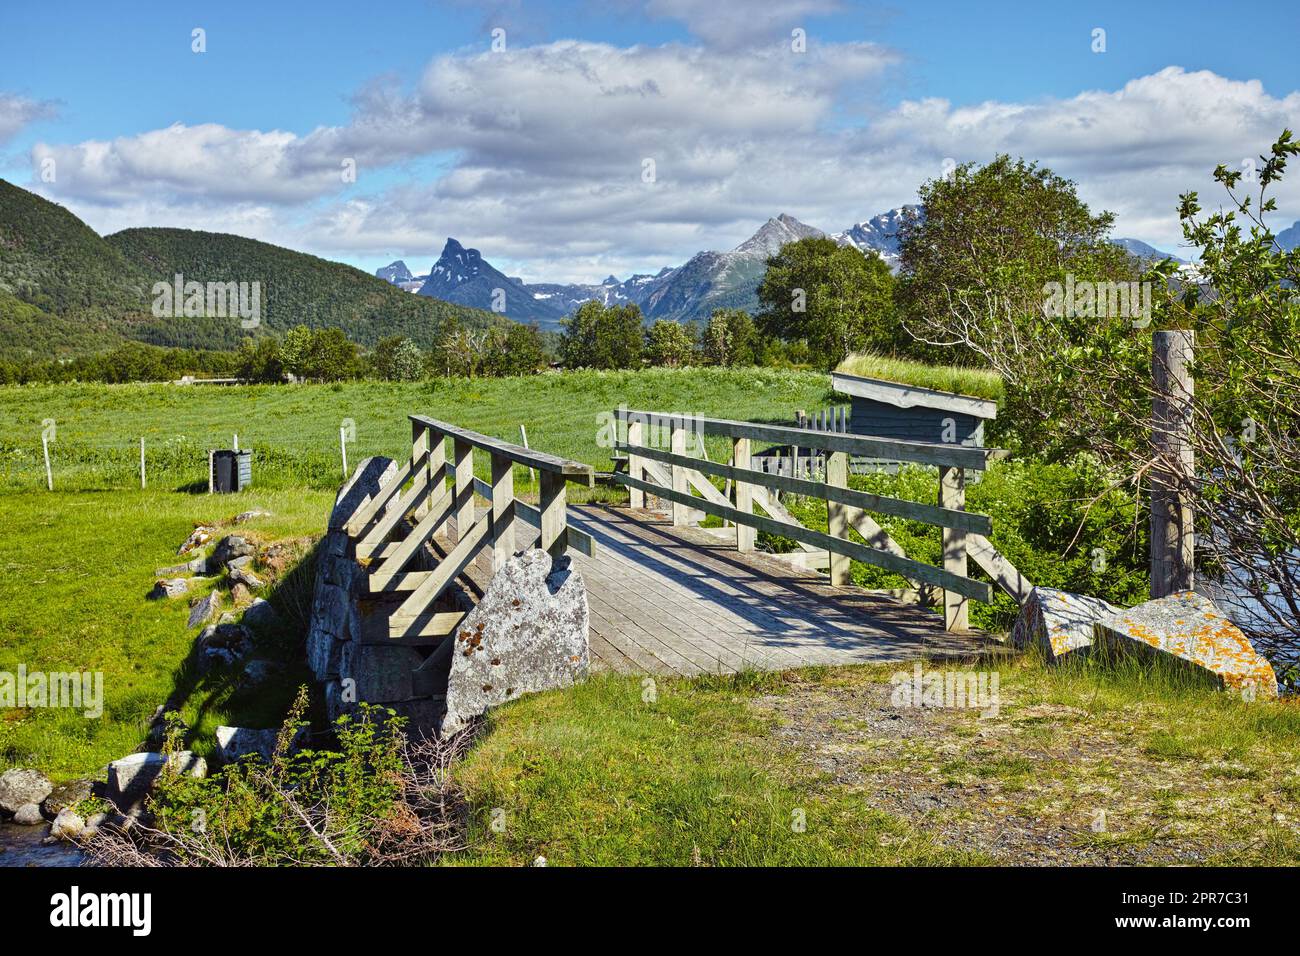 Landschaft mit Holzbrücke in abgelegener grüner Landschaft von Bodo in Nordland, Norwegen. Infrastruktur und gebaute Kreuzung in ökologischen Wiesen und Umweltfeldern. Erkunden Sie die Natur während des Tages Stockfoto